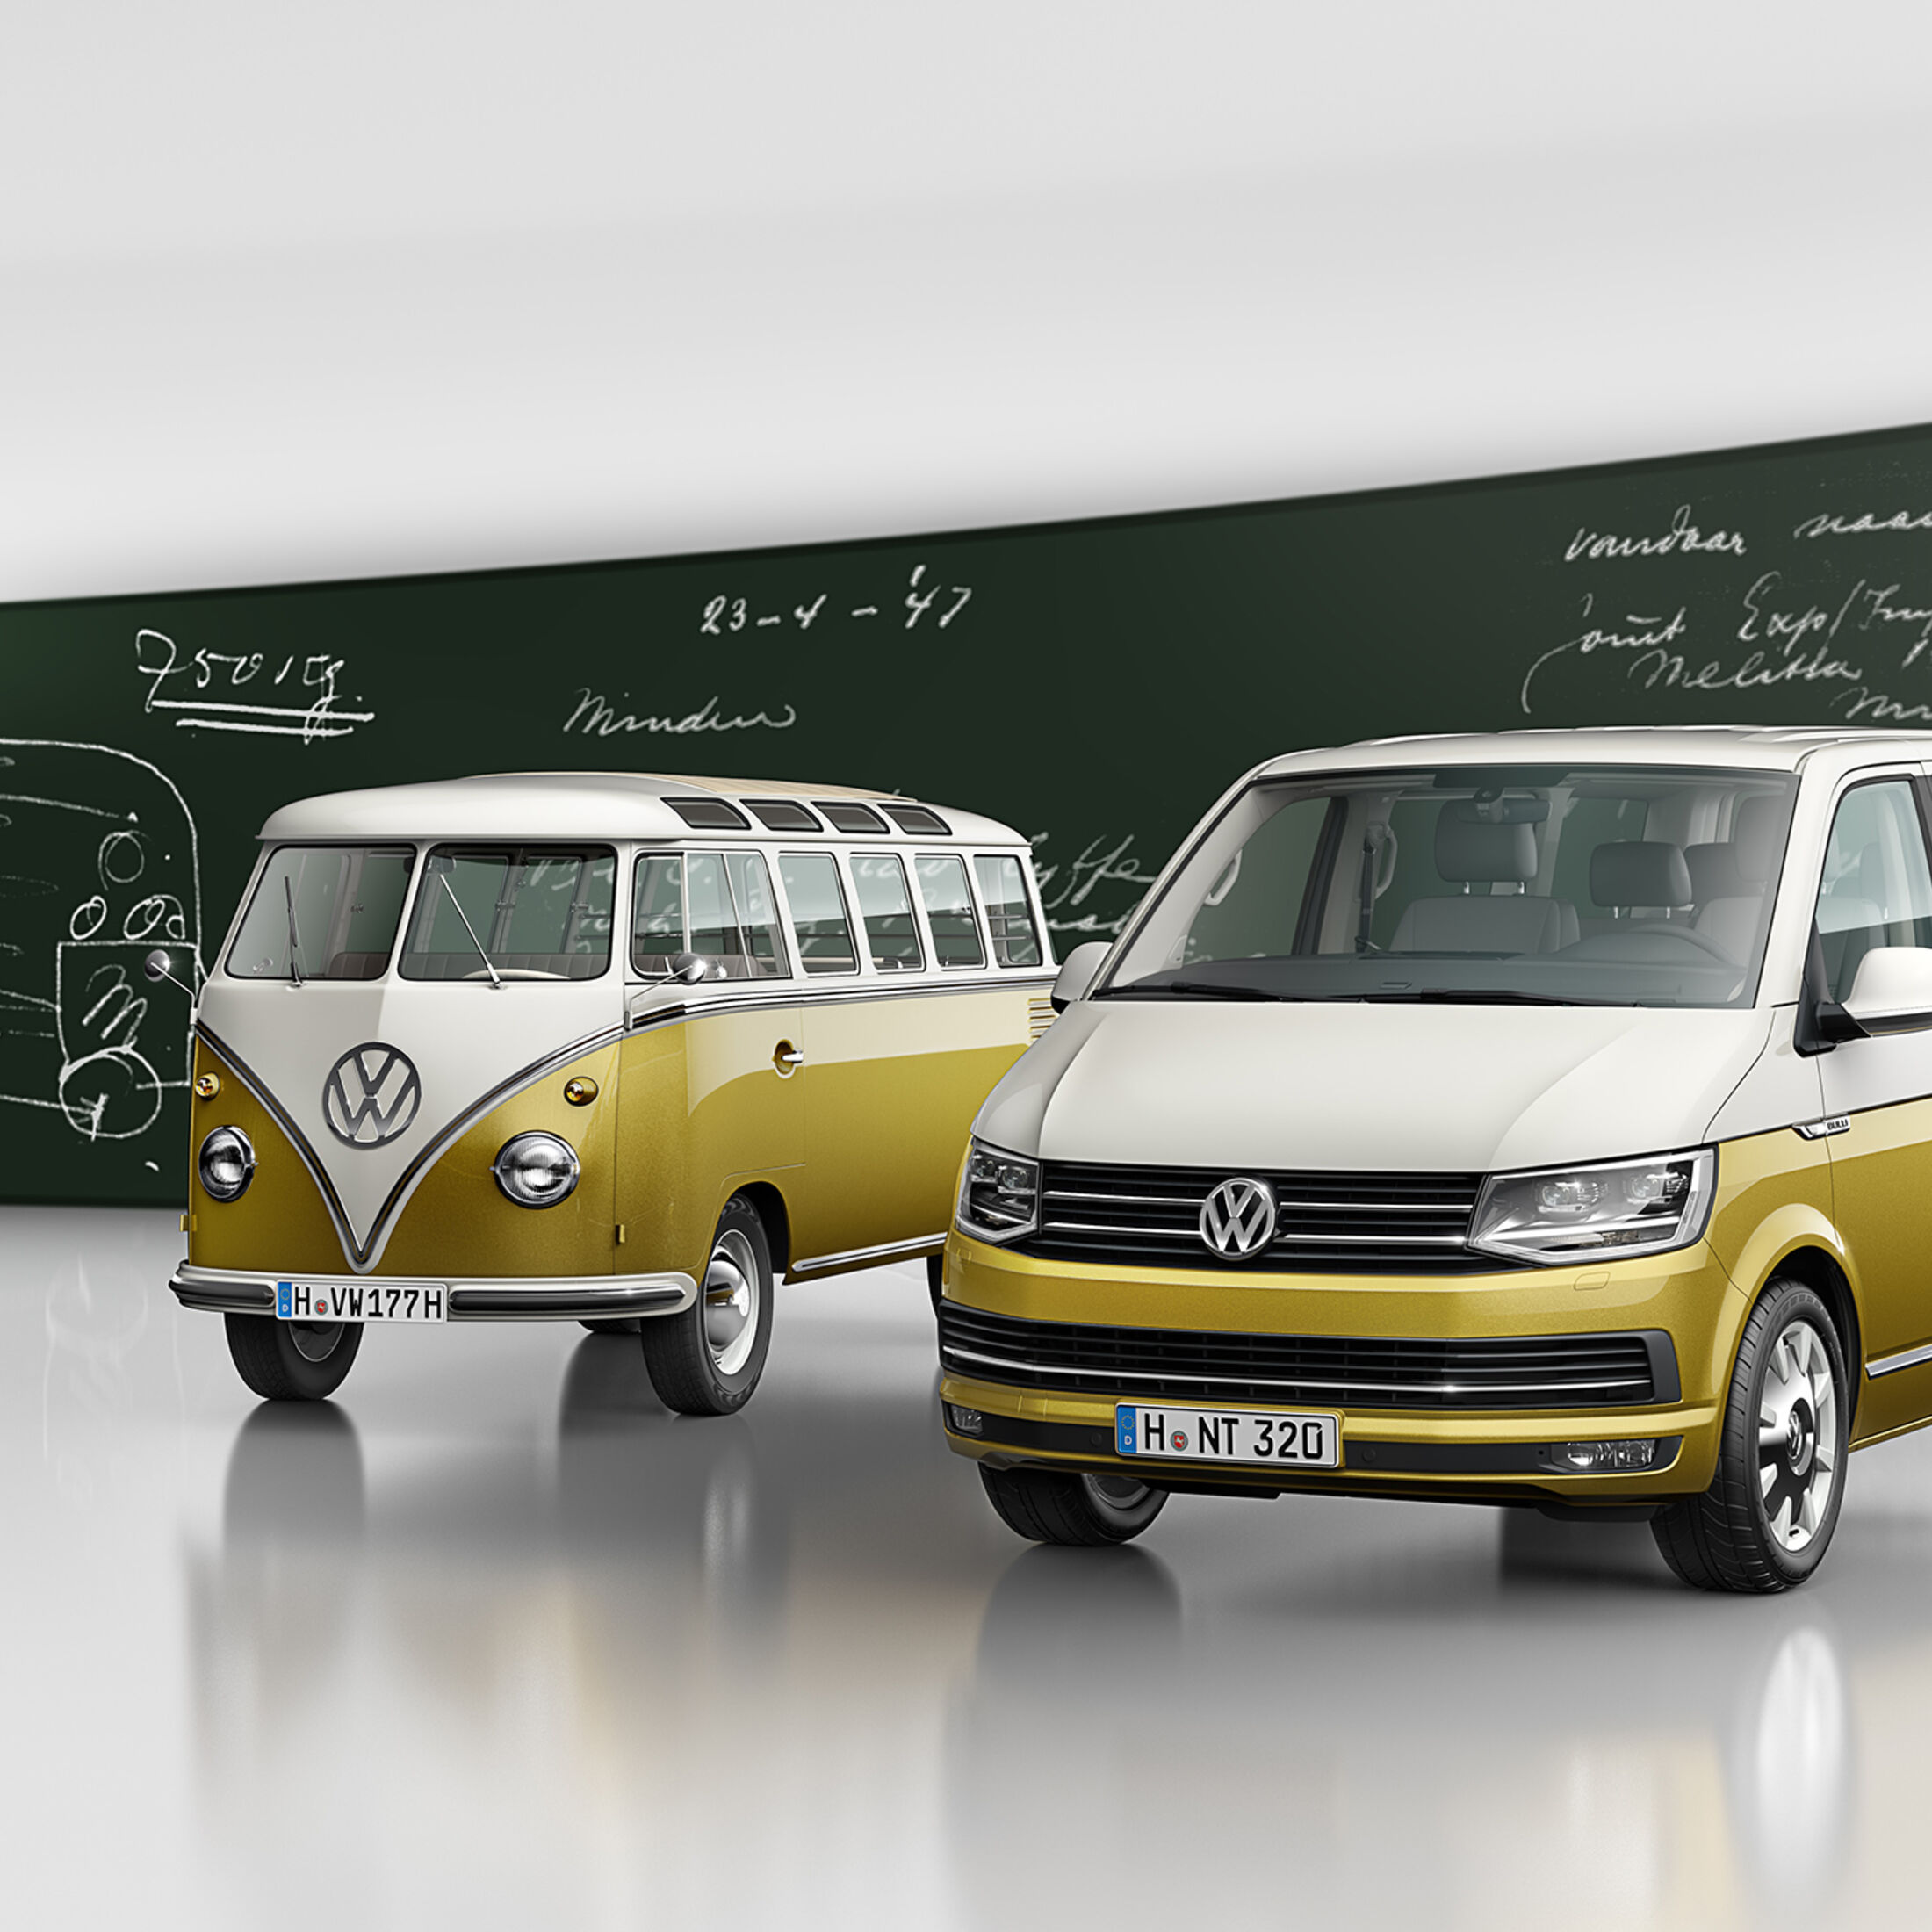 70 Jahre VW Bulli: Marktstart und Infos zum Sondermodell